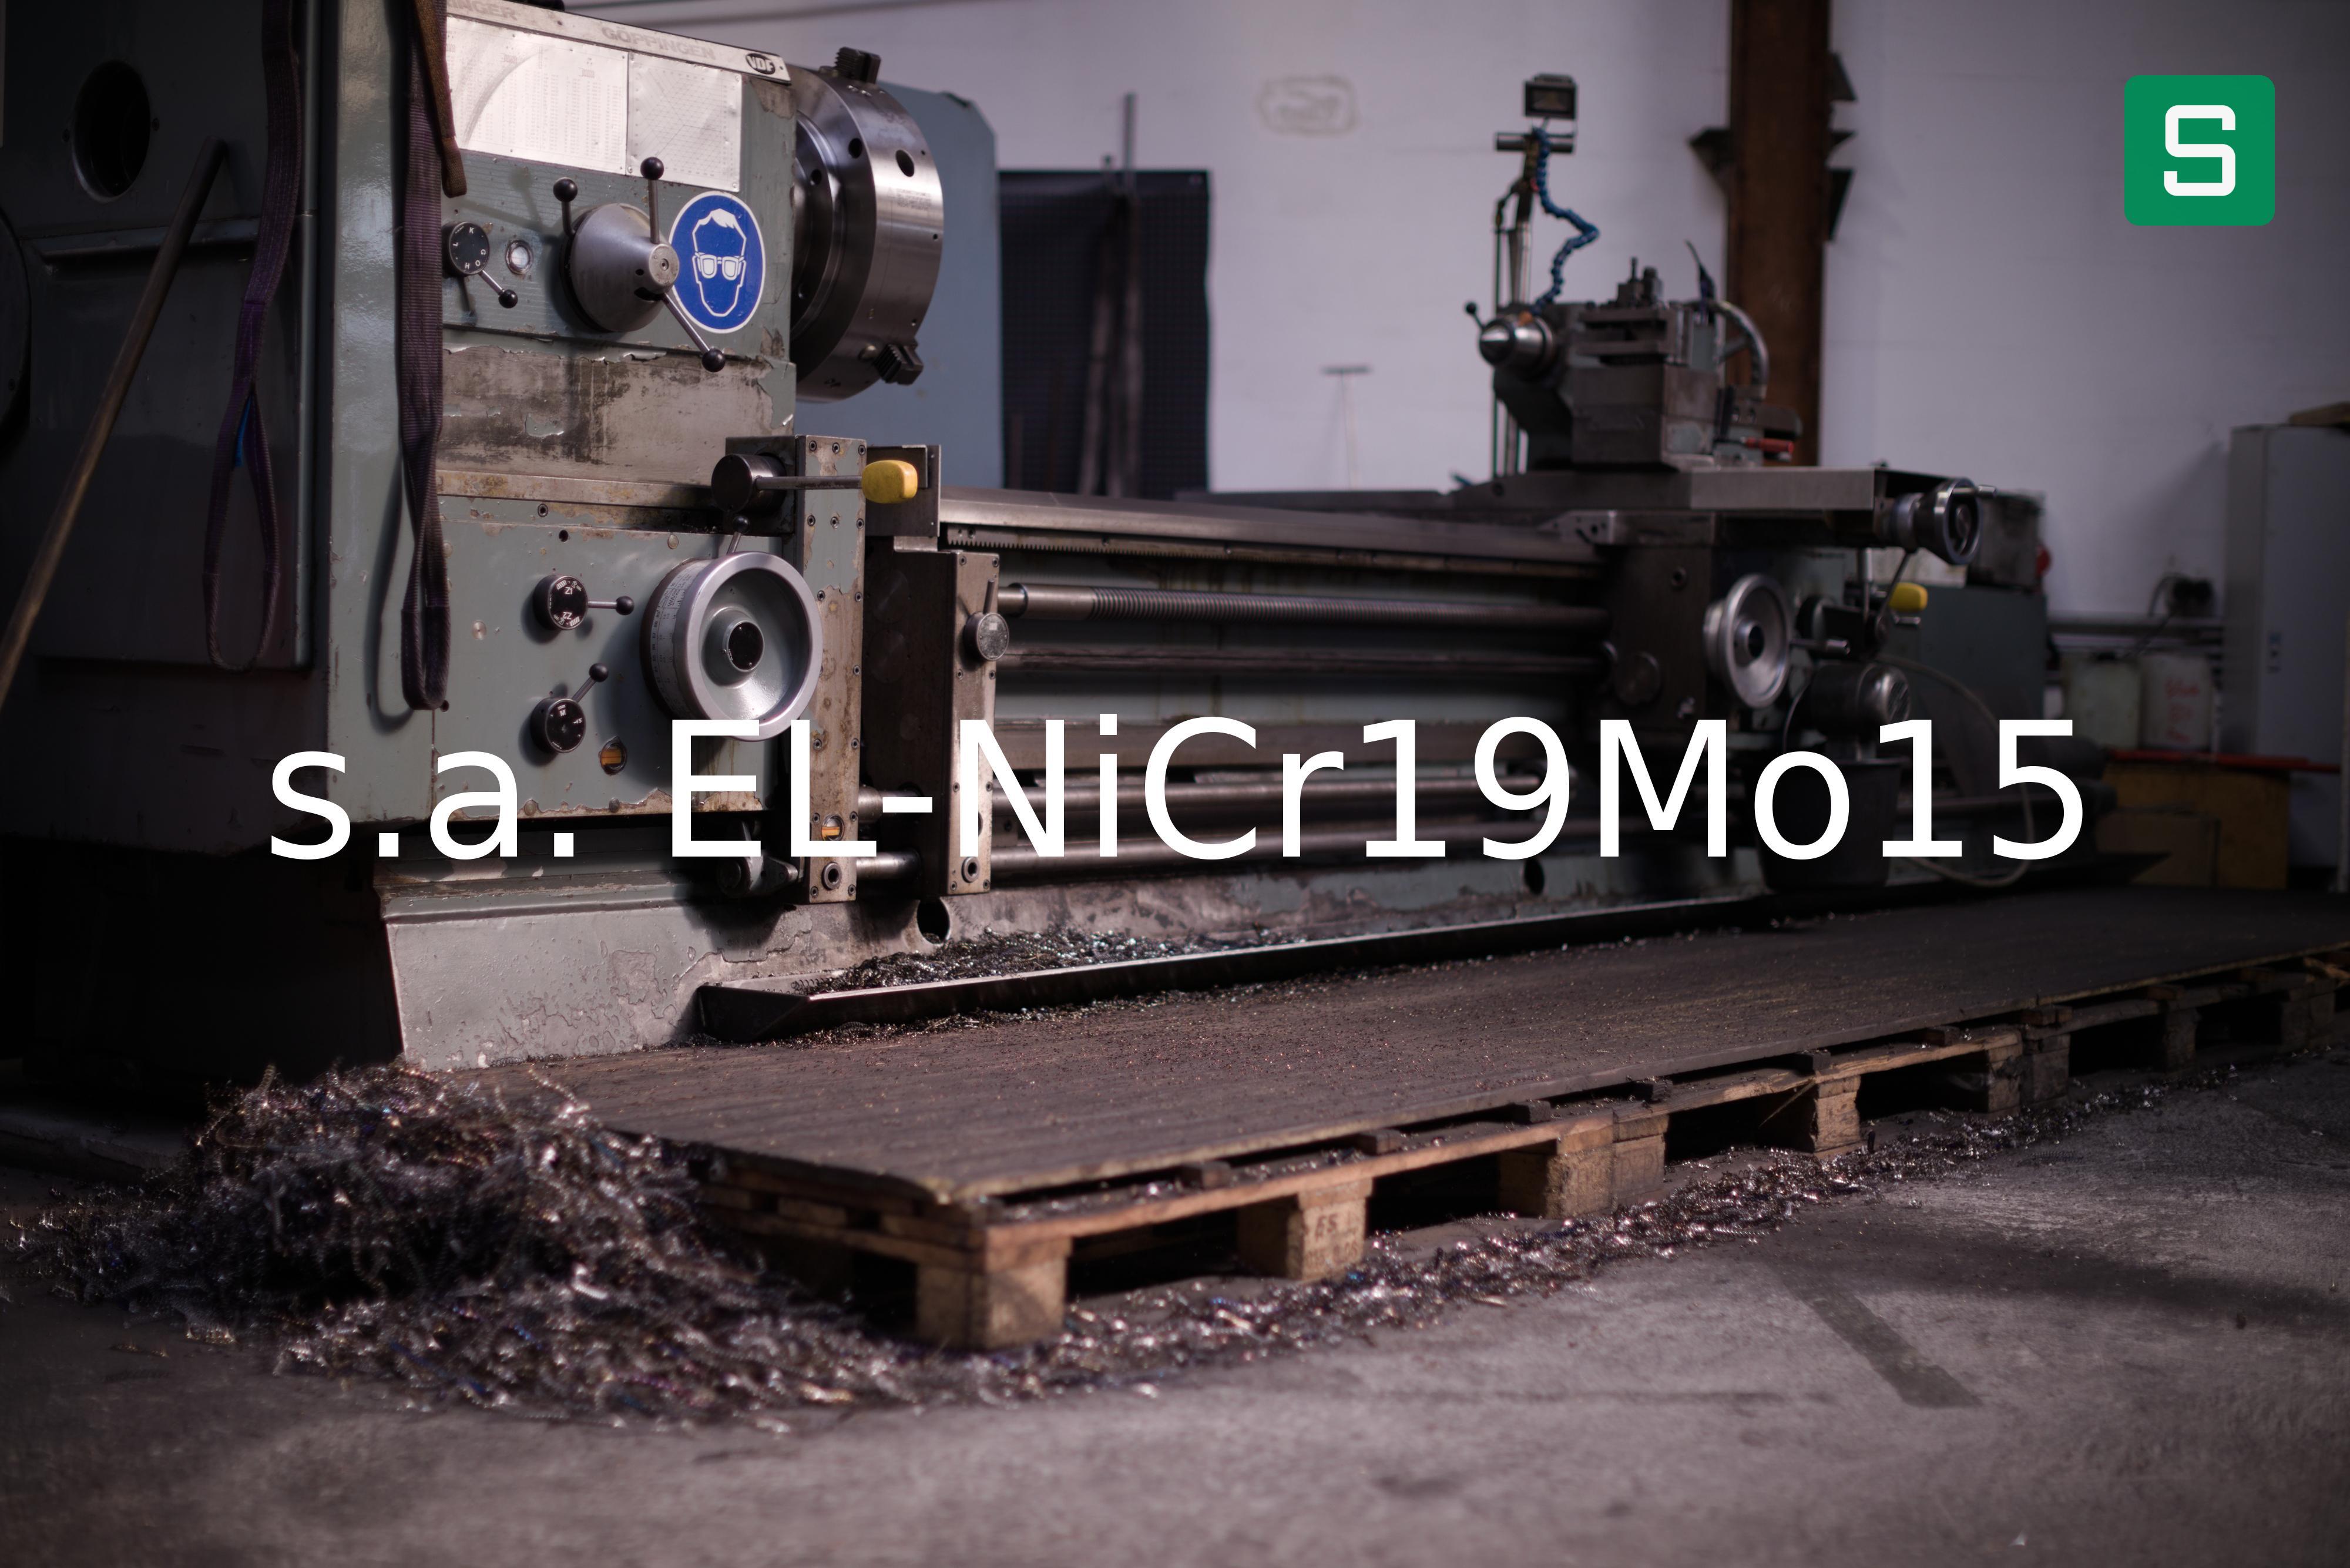 Stahlwerkstoff: s.a. EL-NiCr19Mo15